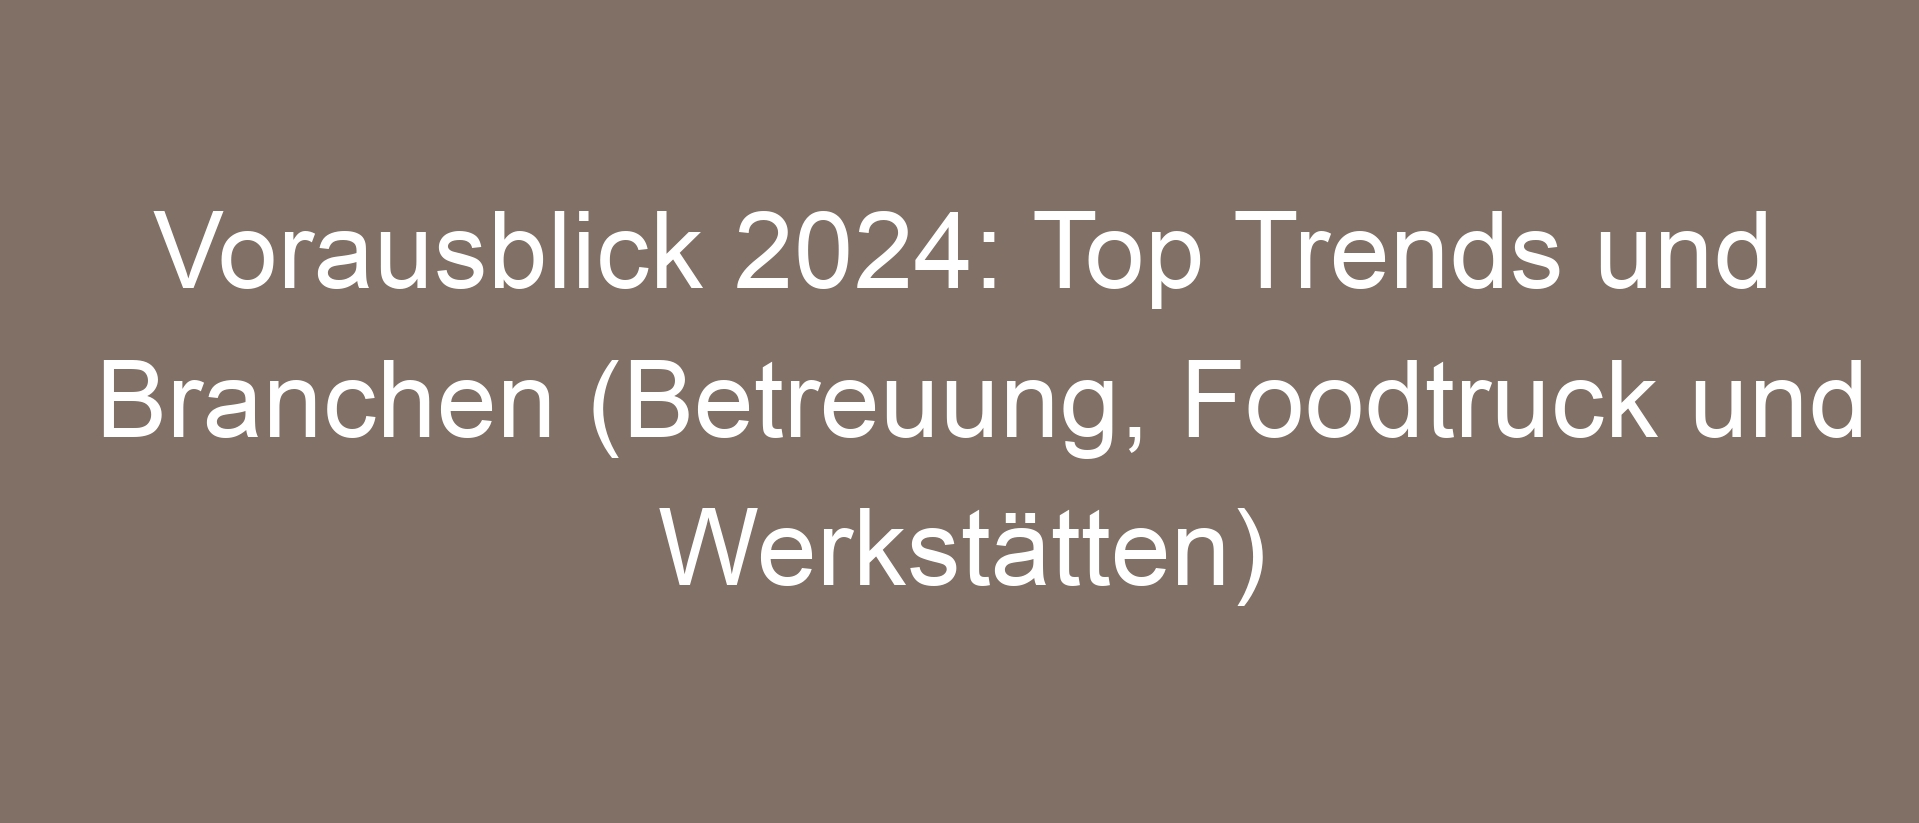 Vorausblick 2024: Top Trends und Branchen (Betreuung, Foodtruck und Werkstätten)